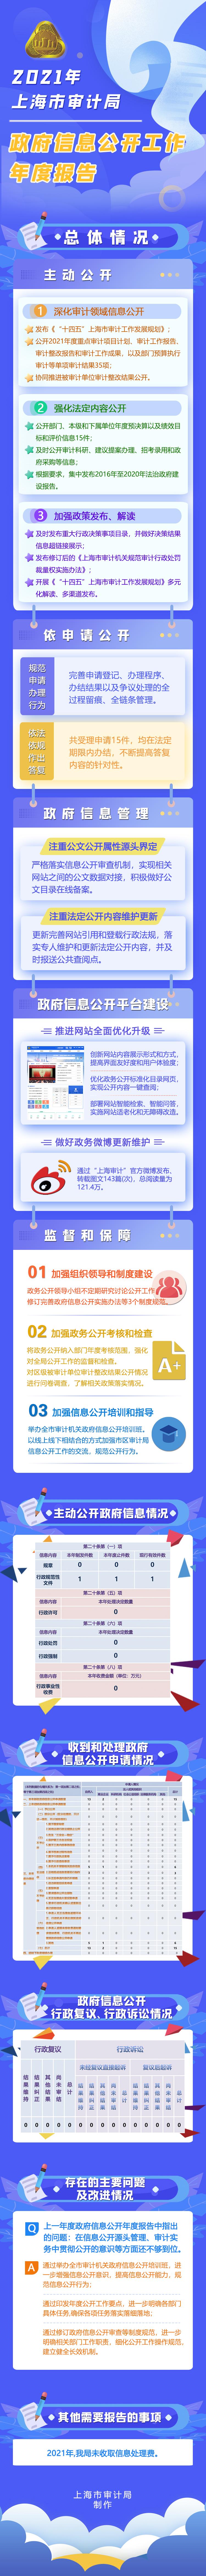 一图解读《2021上海市审计局政府信息公开工作年度报告》.jpg